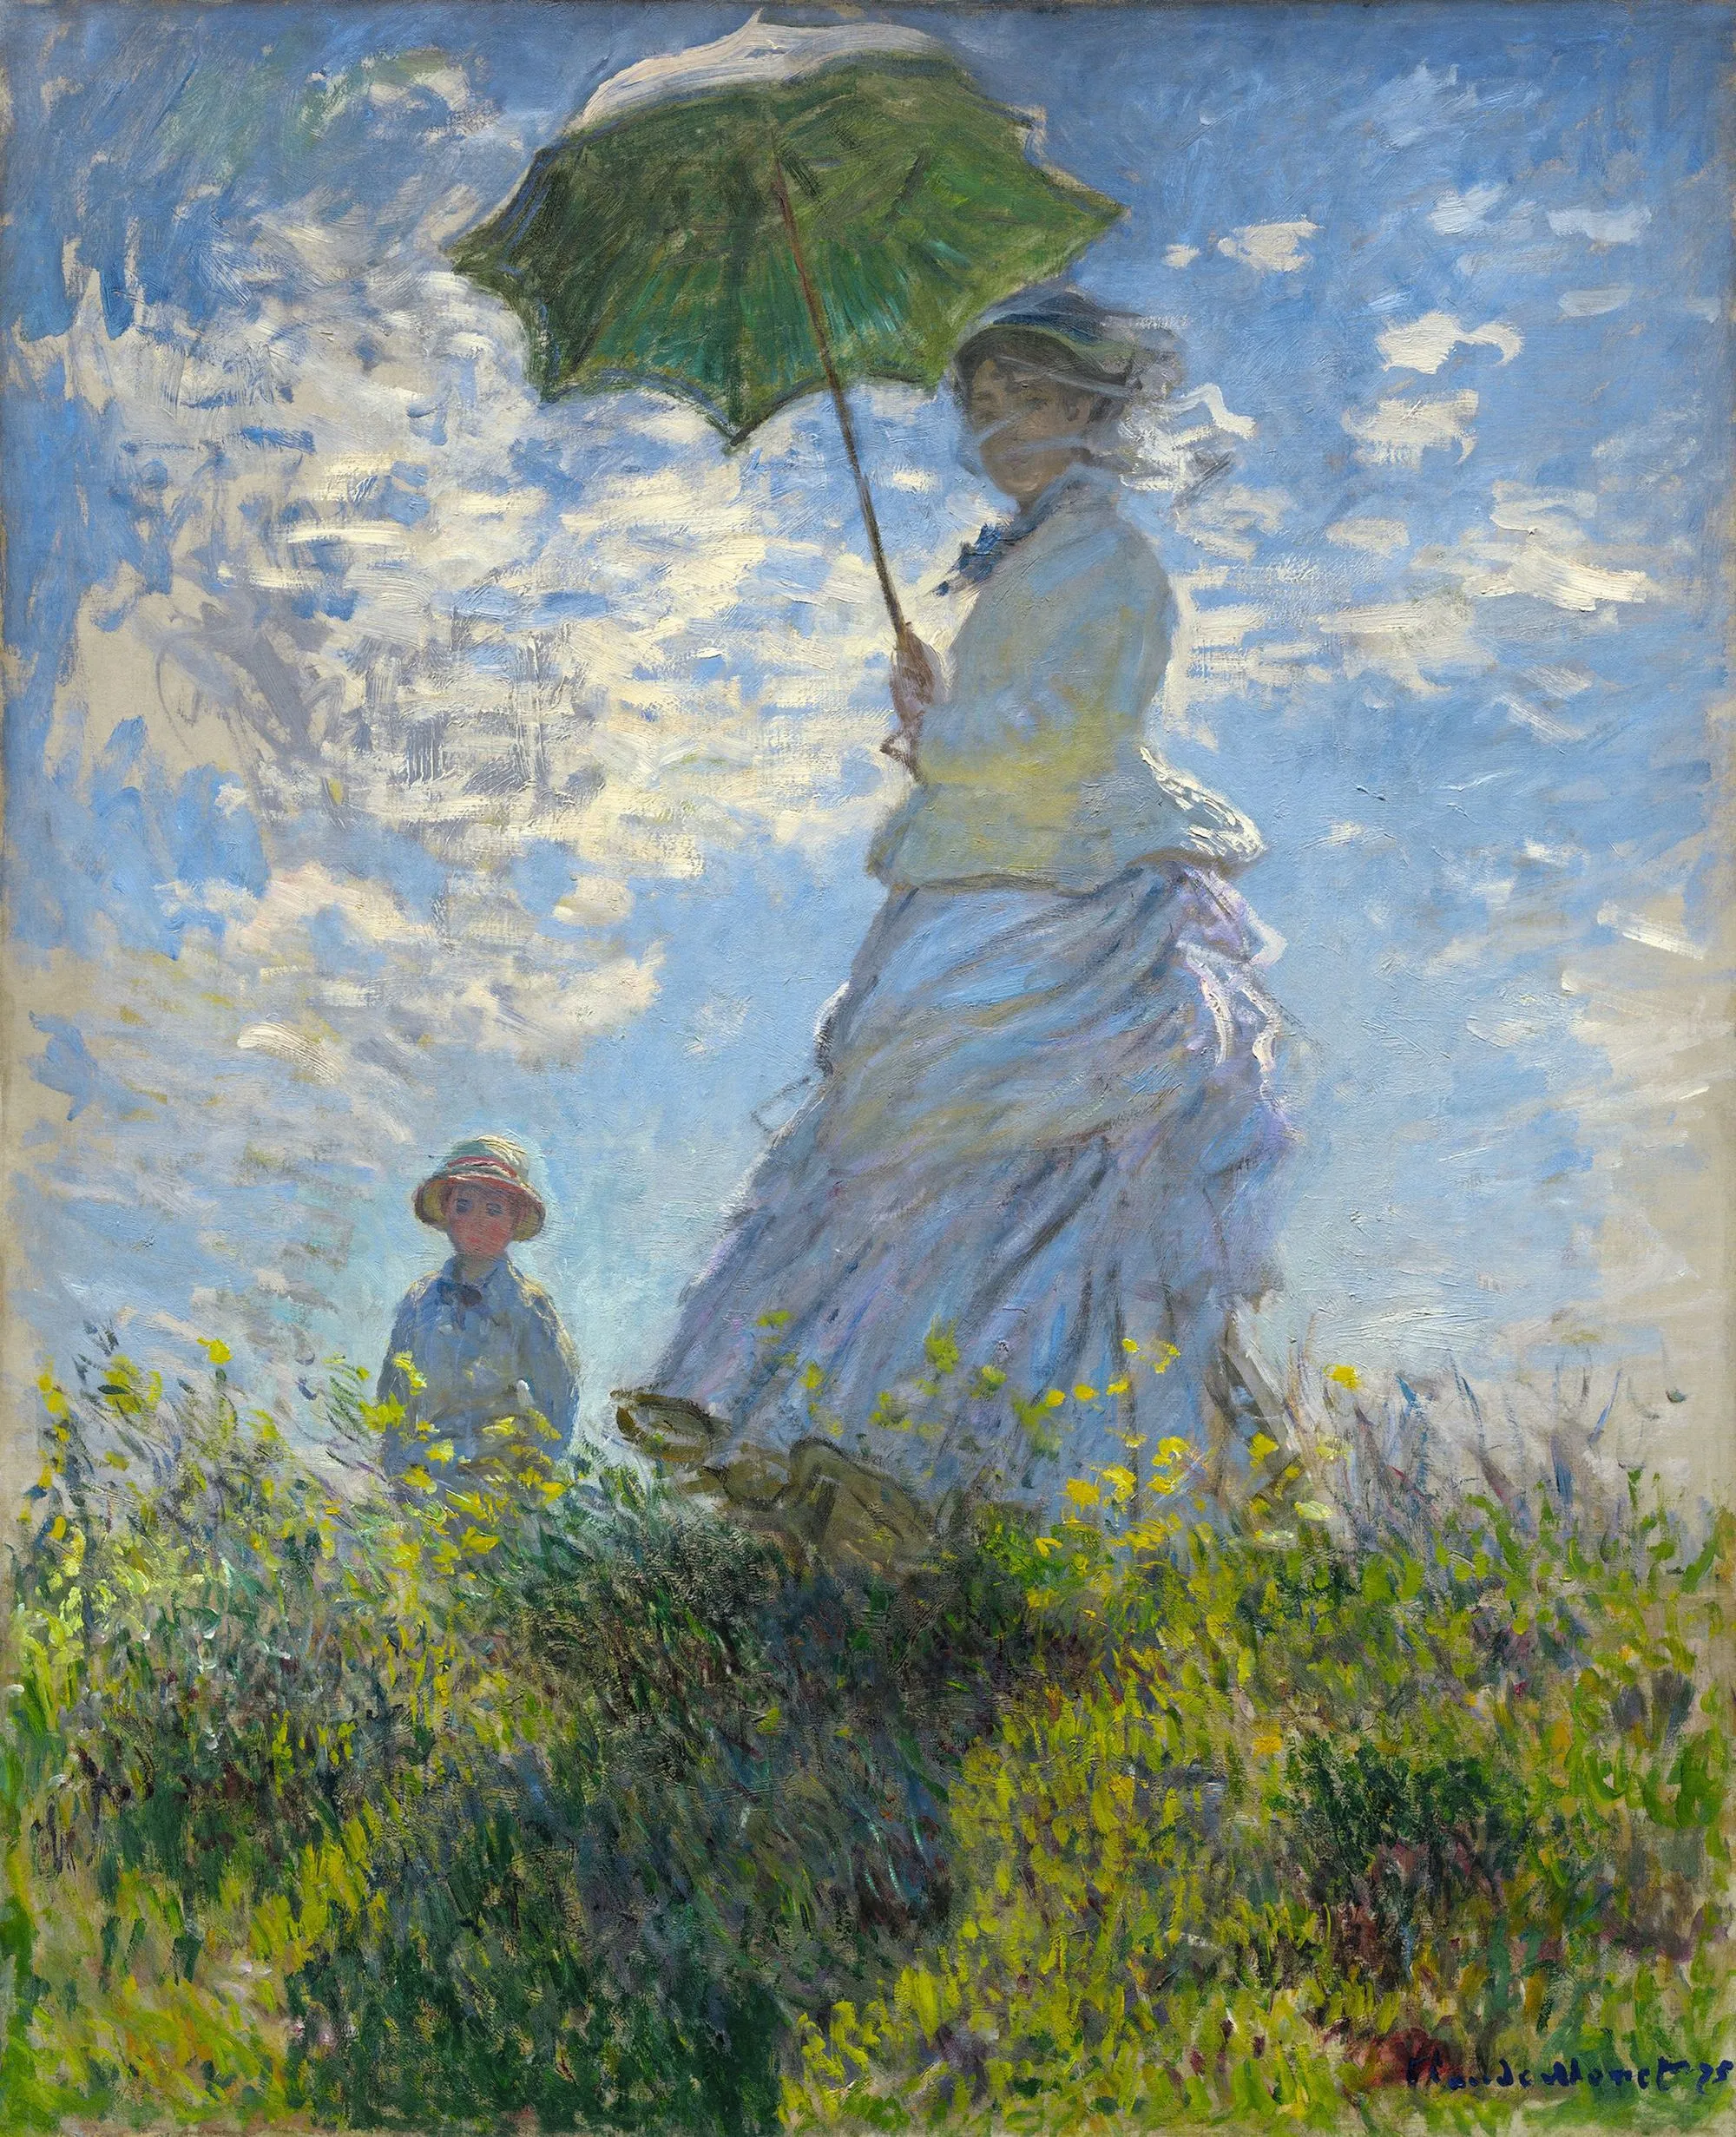 Claude Monet, La Promenade ou La Femme à l'ombrelle, 1875,
huile sur toile, 100 × 81 cm, National Gallery of Art, Washington.